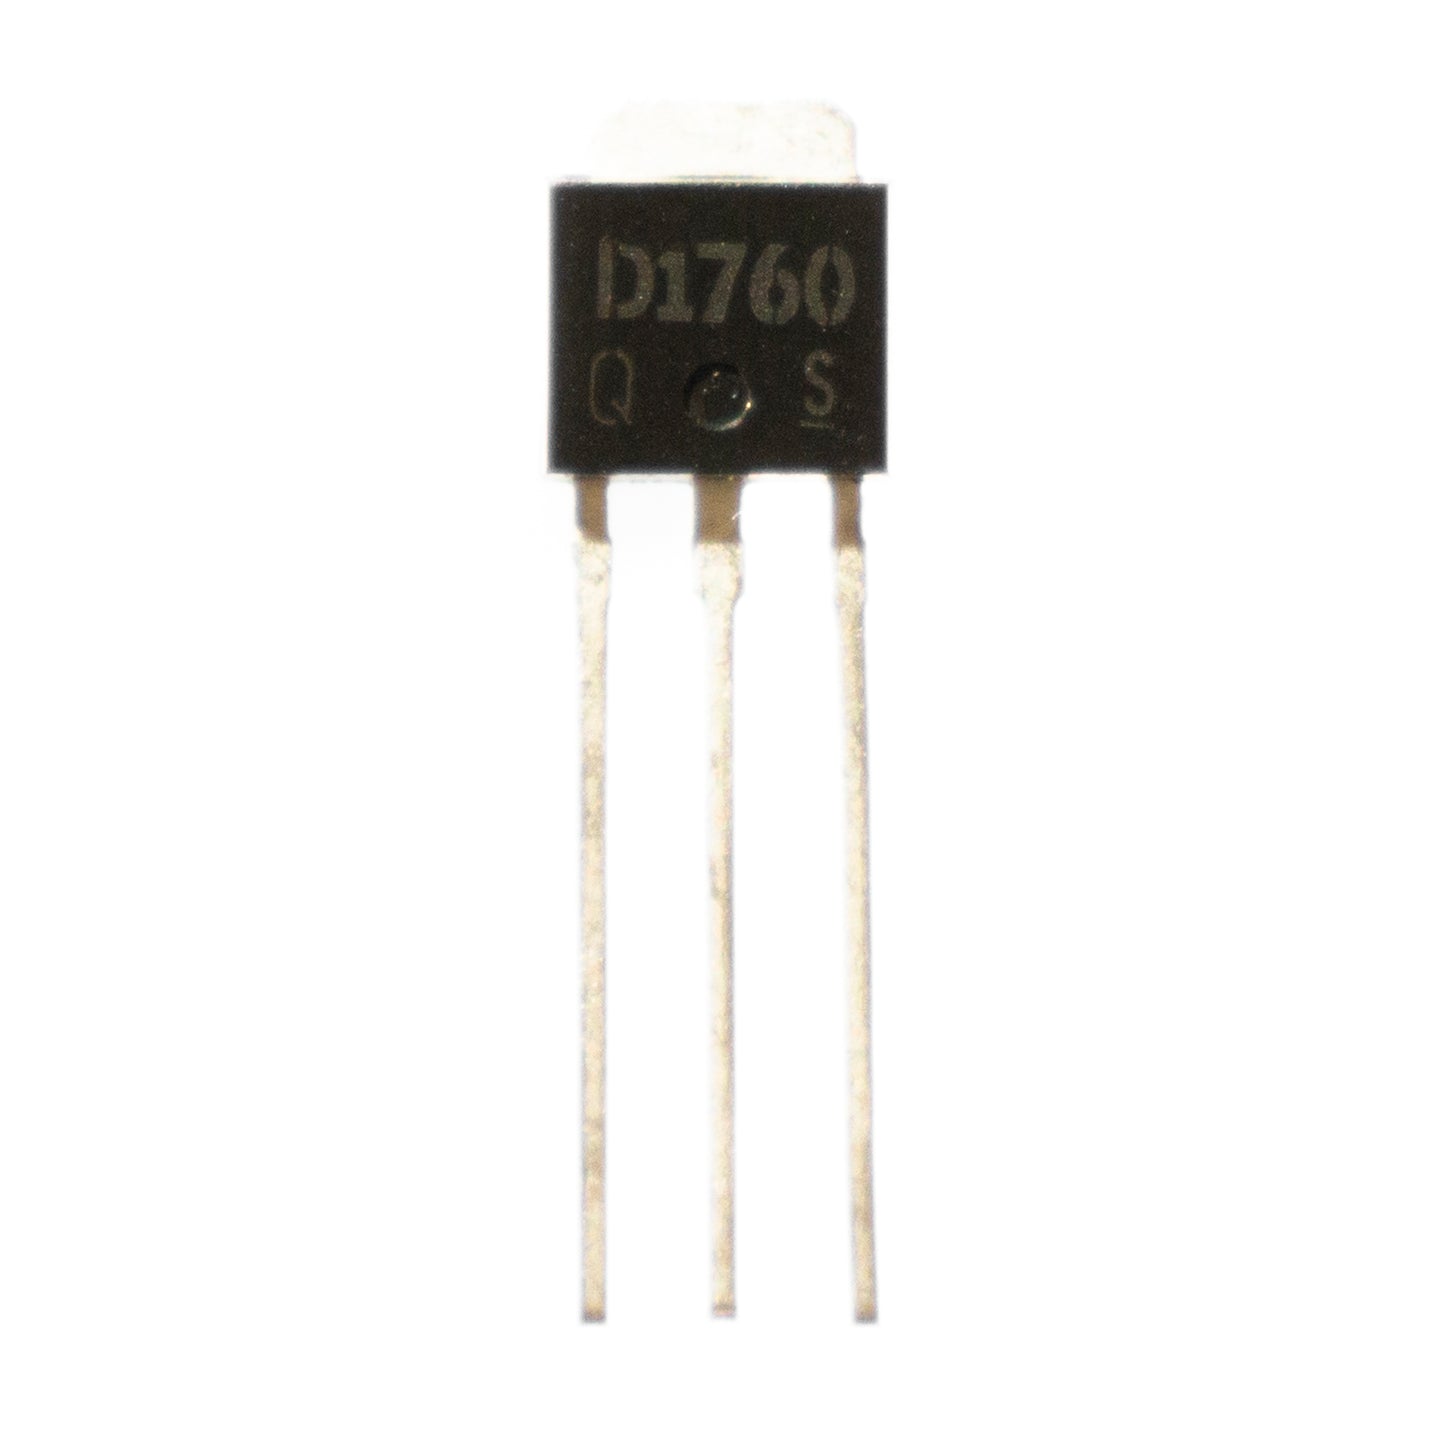 2SD1760 componente elettronico, circuito integrato, transistor, 3 contatti